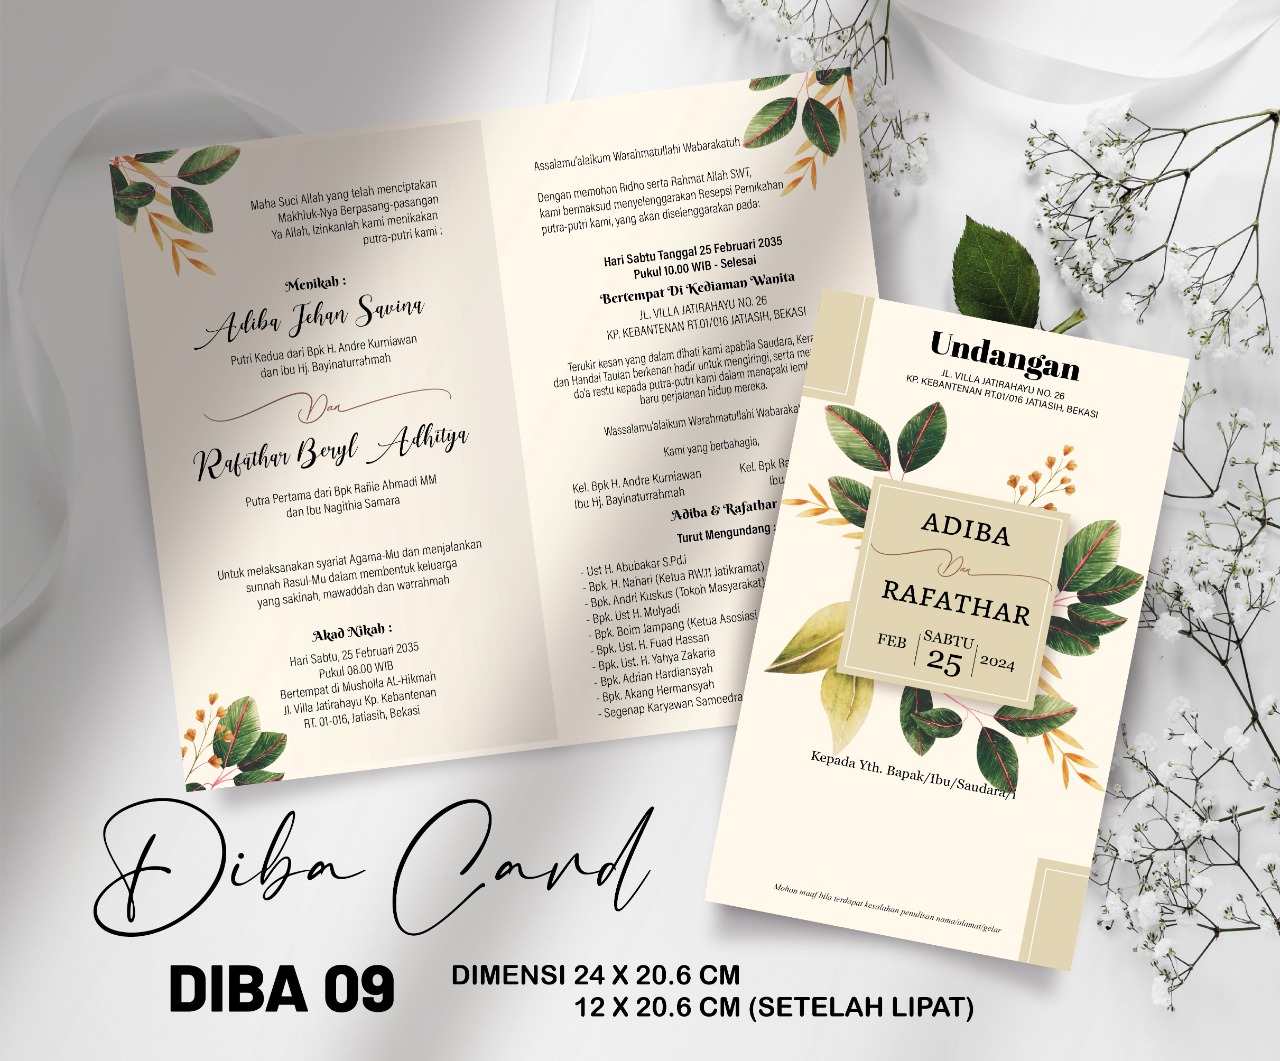 DIBA CARD 09 